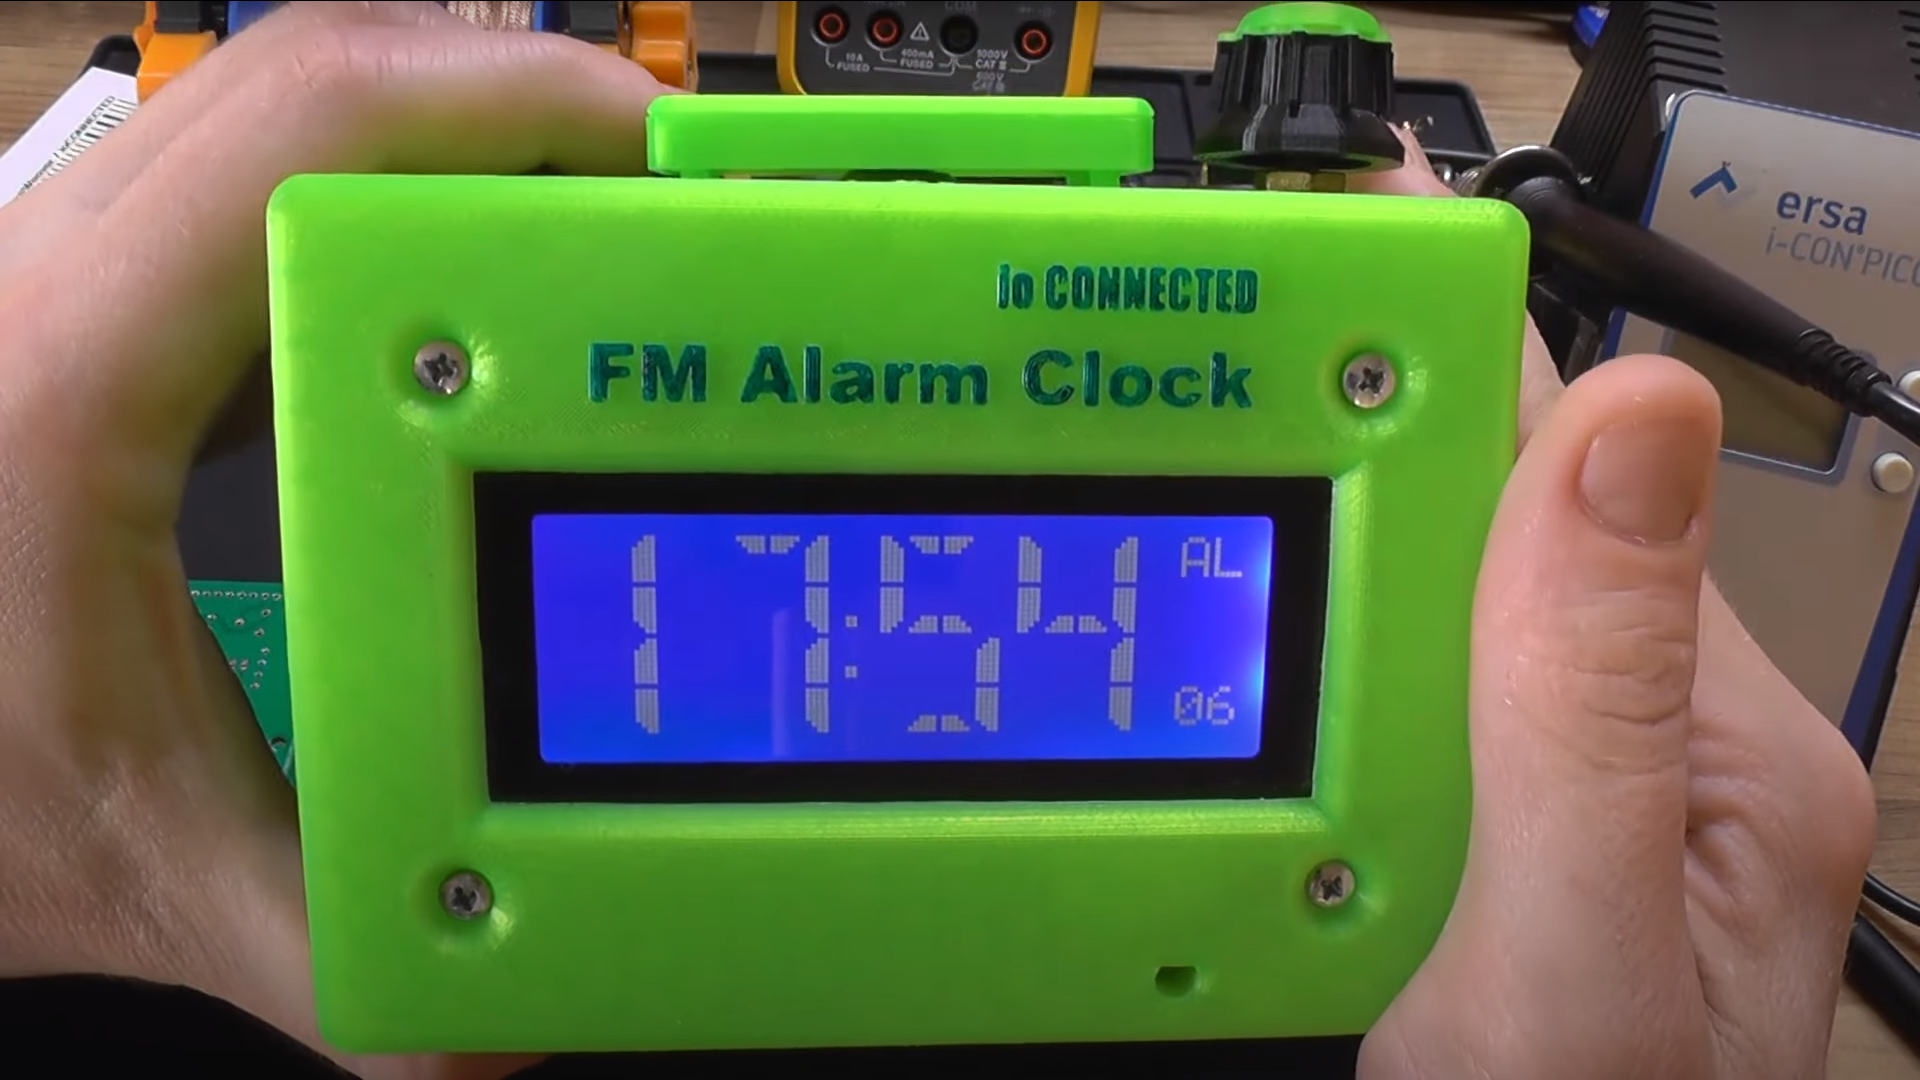 IO Connected Clock Radio